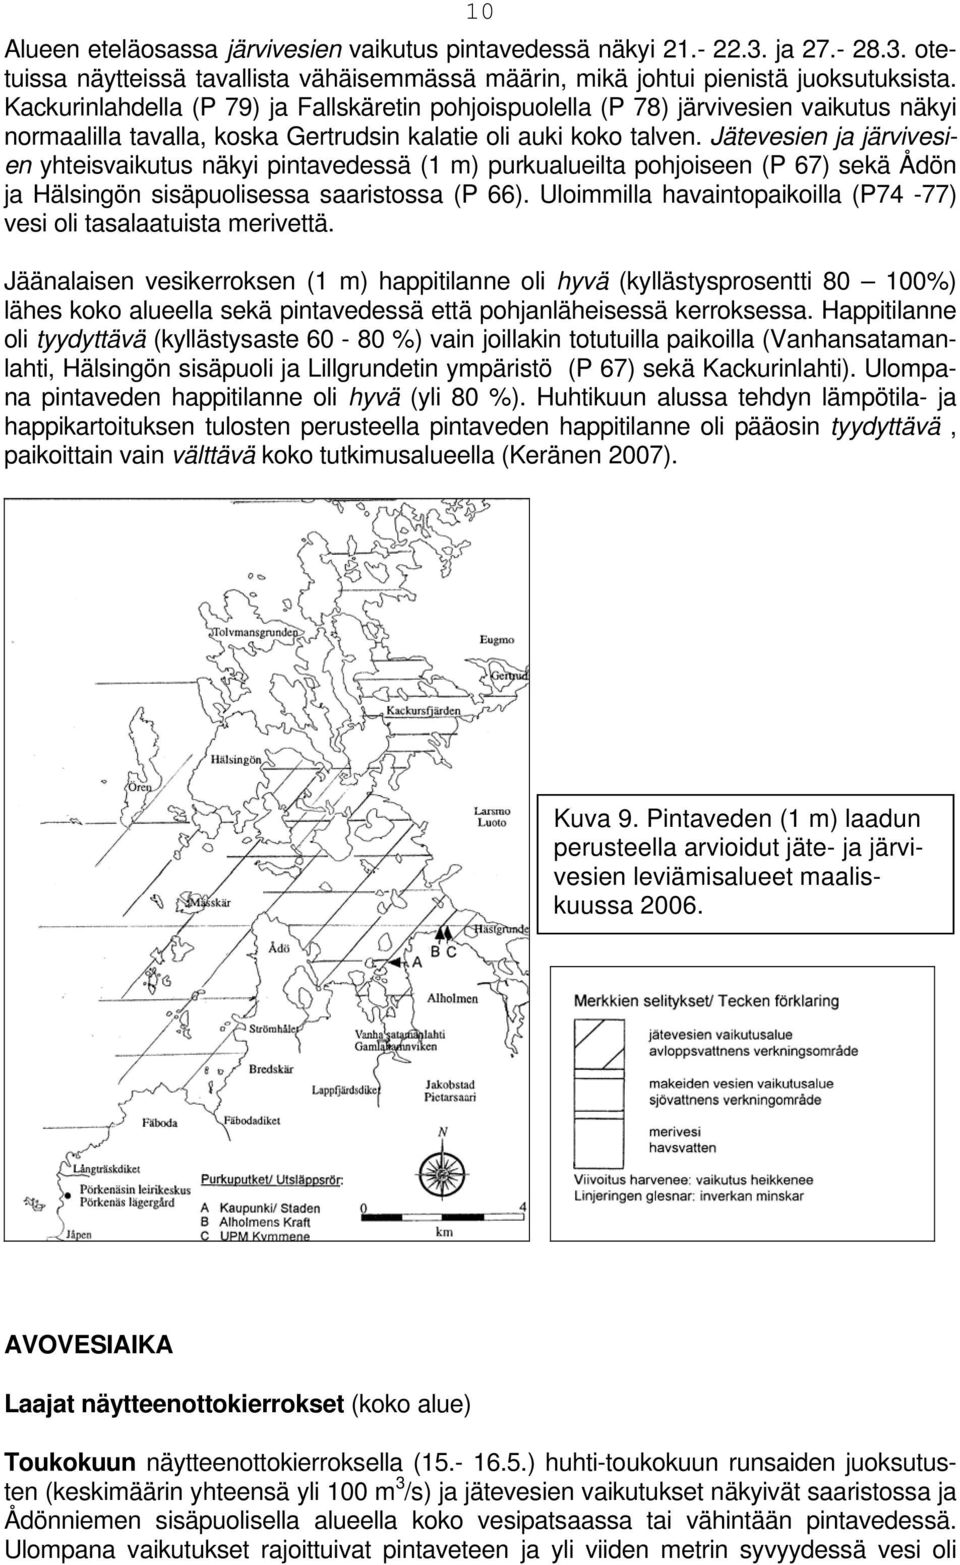 Jätevesien ja järvivesien yhteisvaikutus näkyi pintavedessä (1 m) purkualueilta pohjoiseen (P 67) sekä Ådön ja Hälsingön sisäpuolisessa saaristossa (P 66).